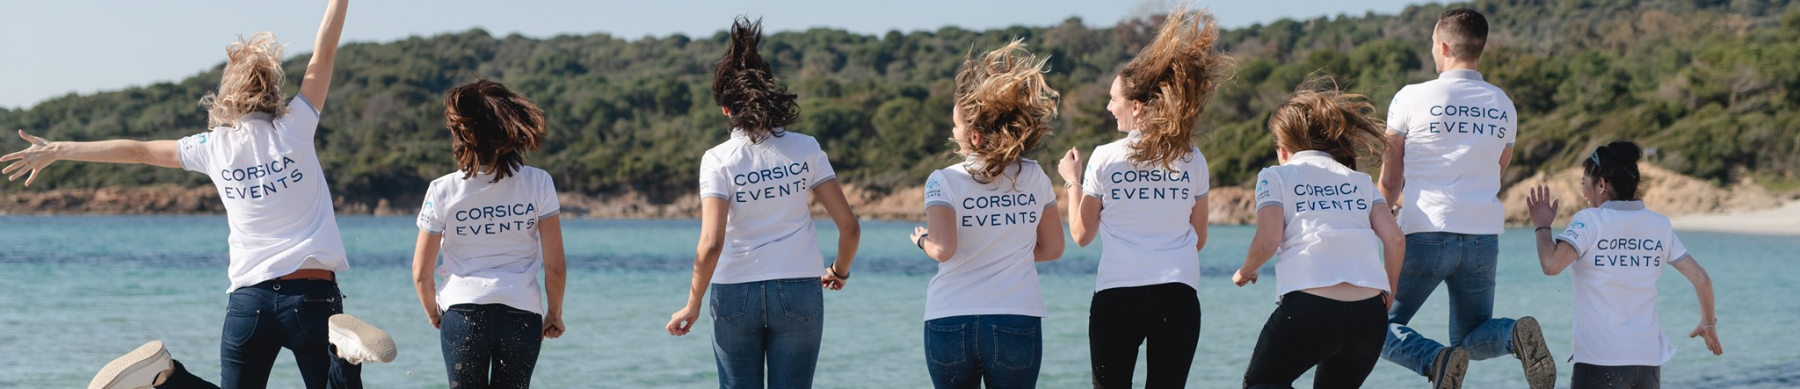 Bannière Corsica Events 